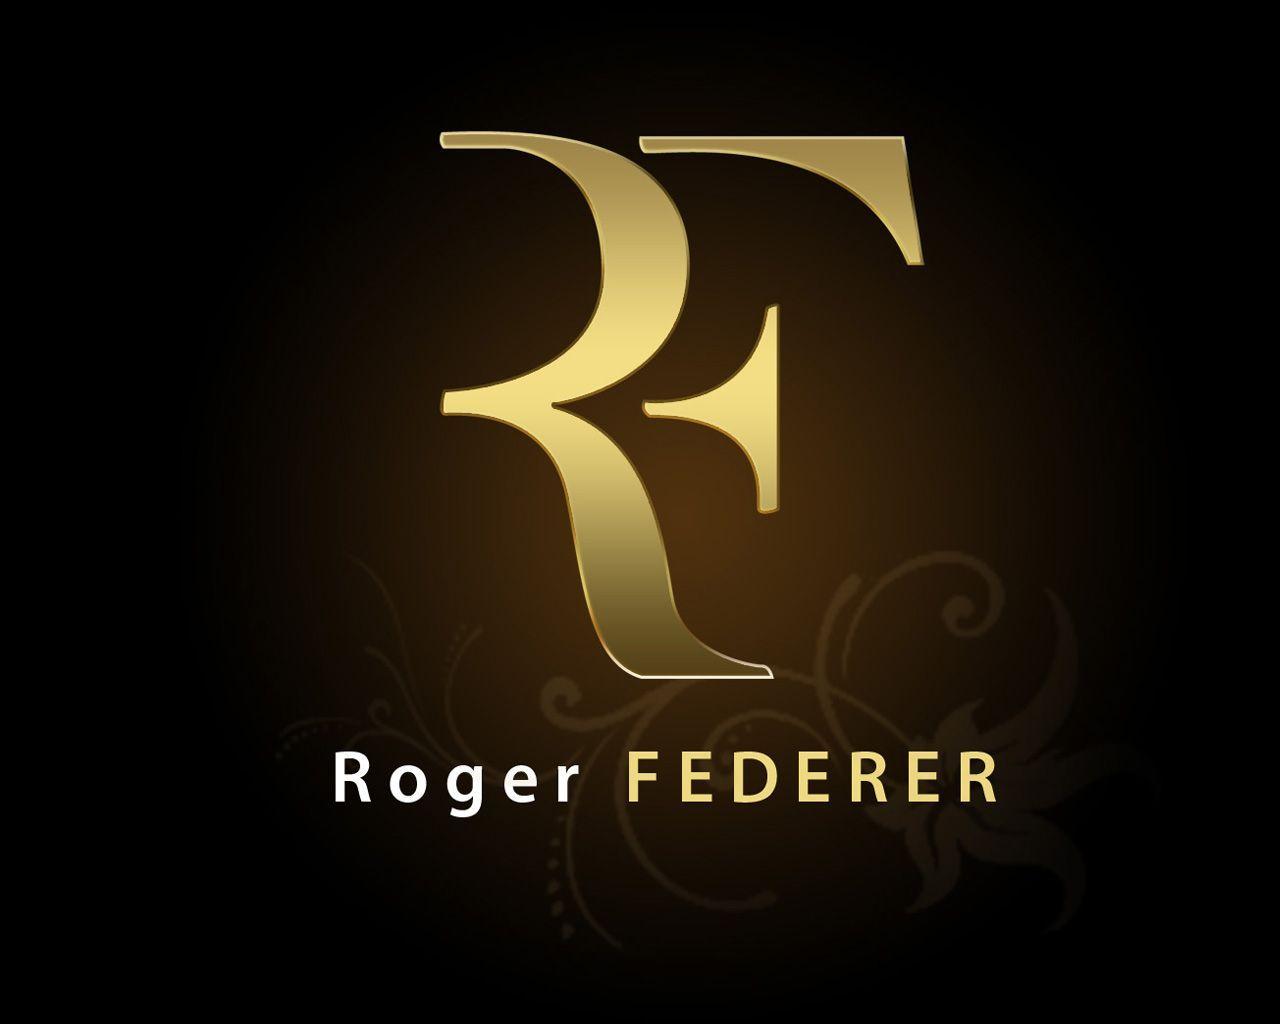 Roger Federer Logo Wallpapers - Top Free Roger Federer Logo Backgrounds